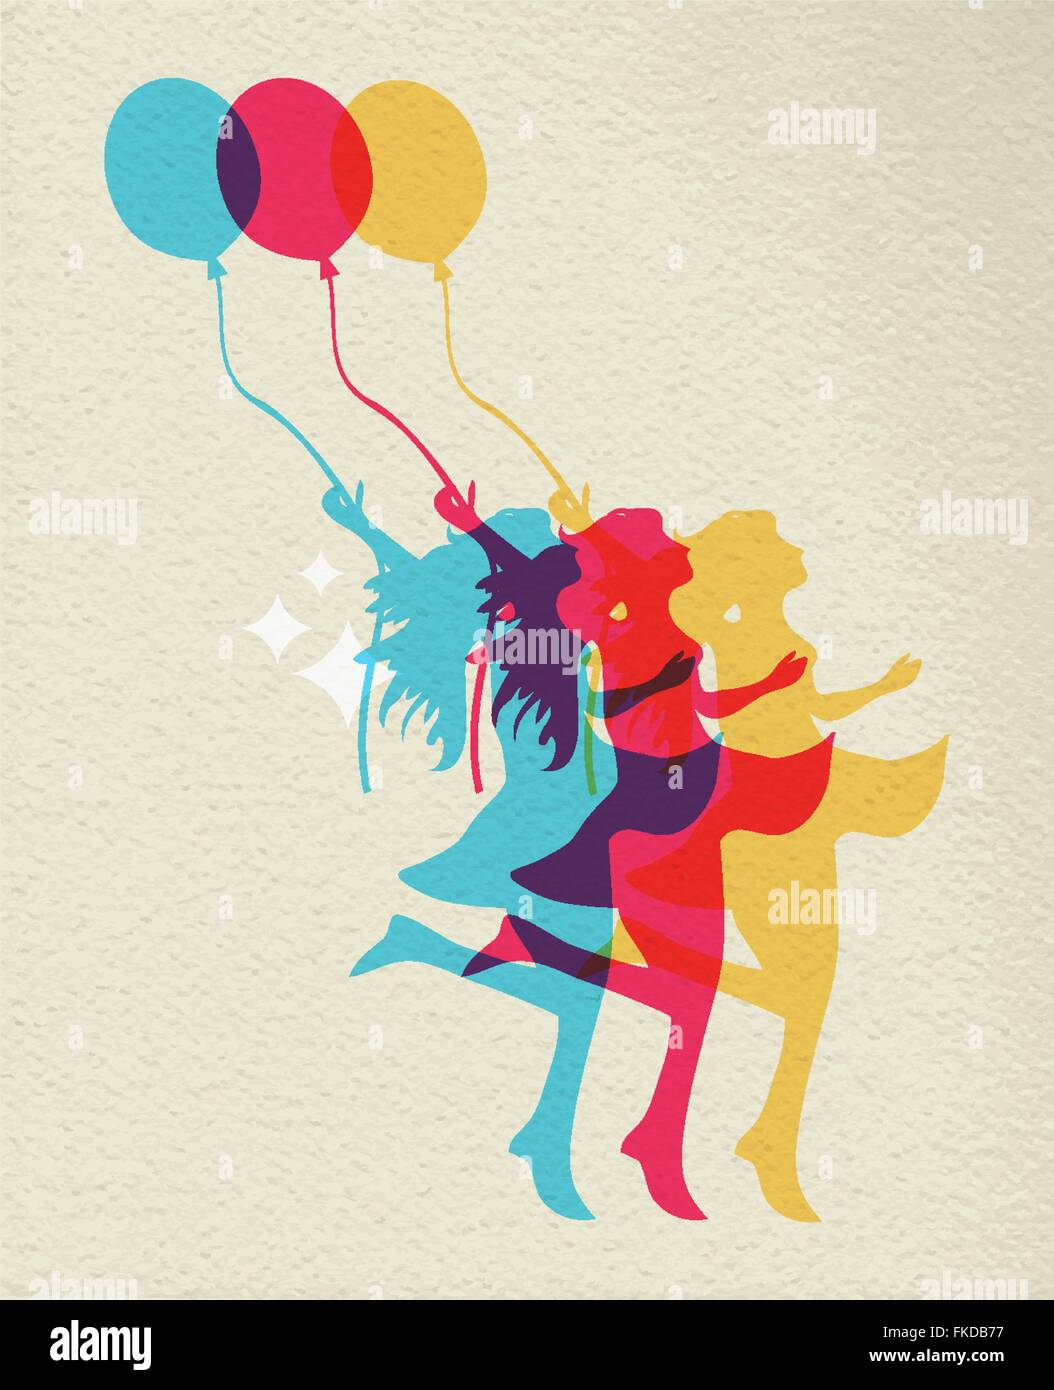 Glückliche Frau Silhouette Tanz mit Ballon, bunte Konzept Abbildung auf Textur Hintergrund. EPS10 Vektor. Stock Vektor